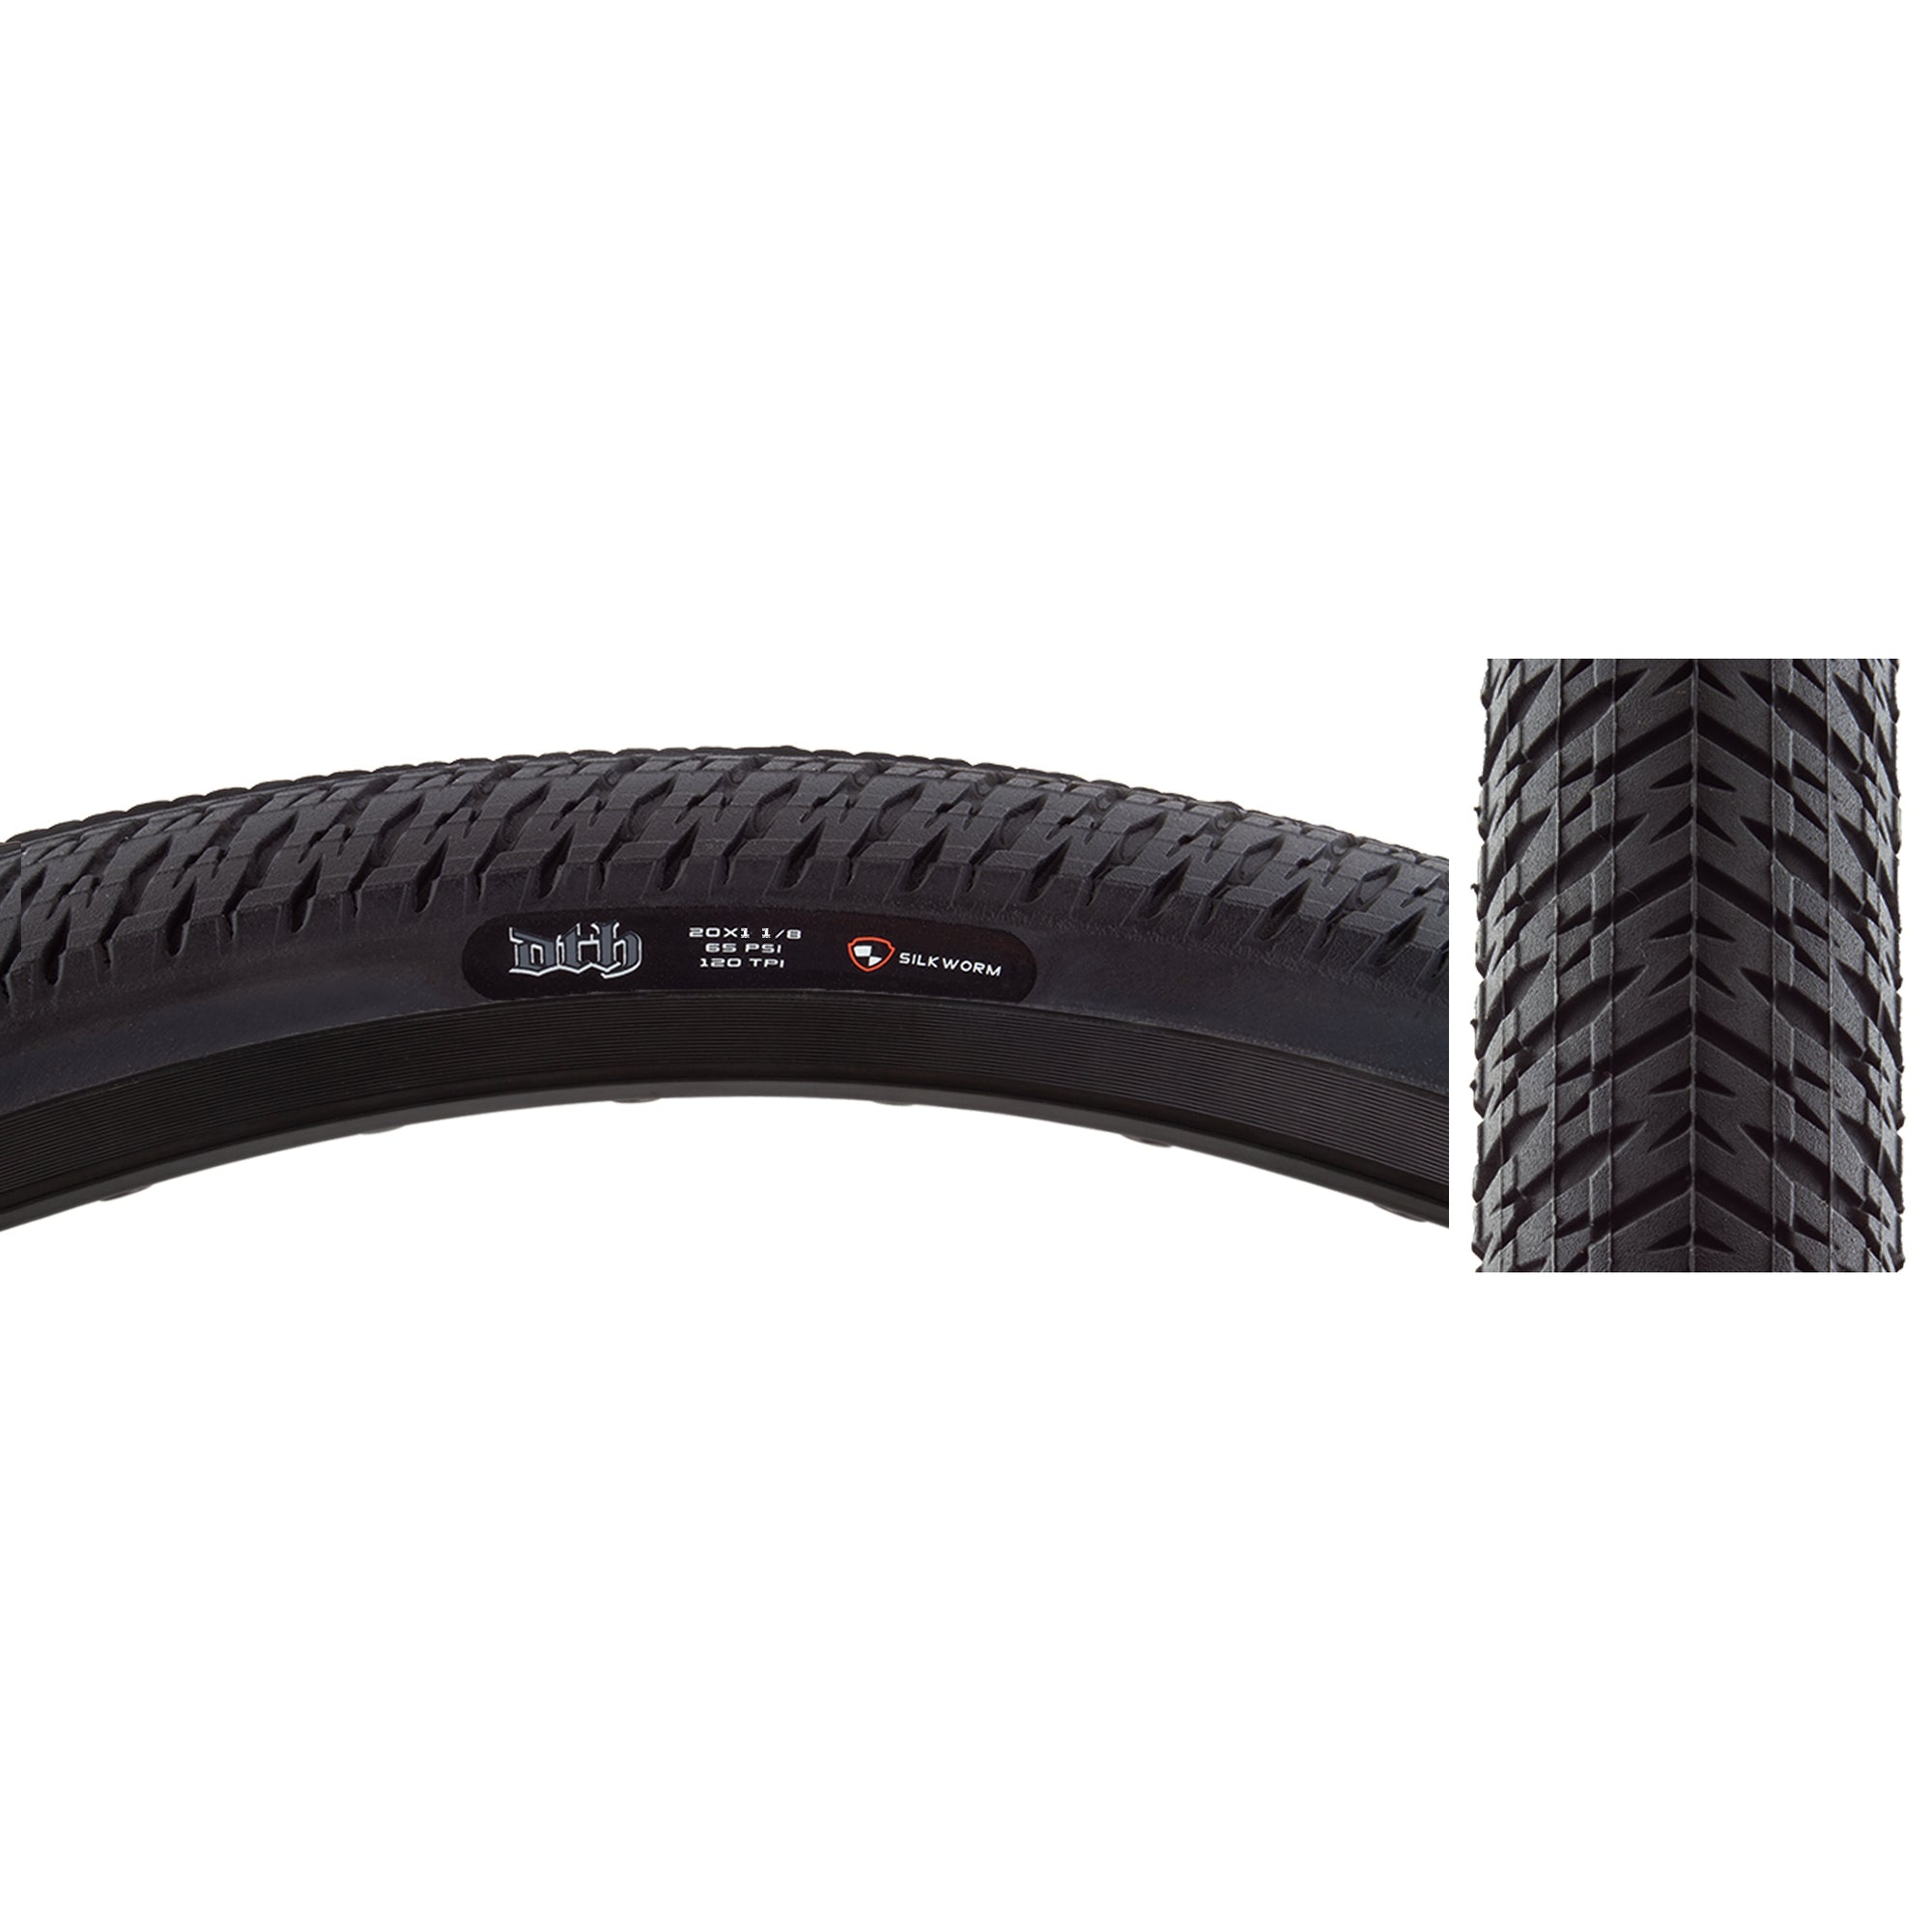 20x1-1/8" Maxxis DTH BMX tire - Black